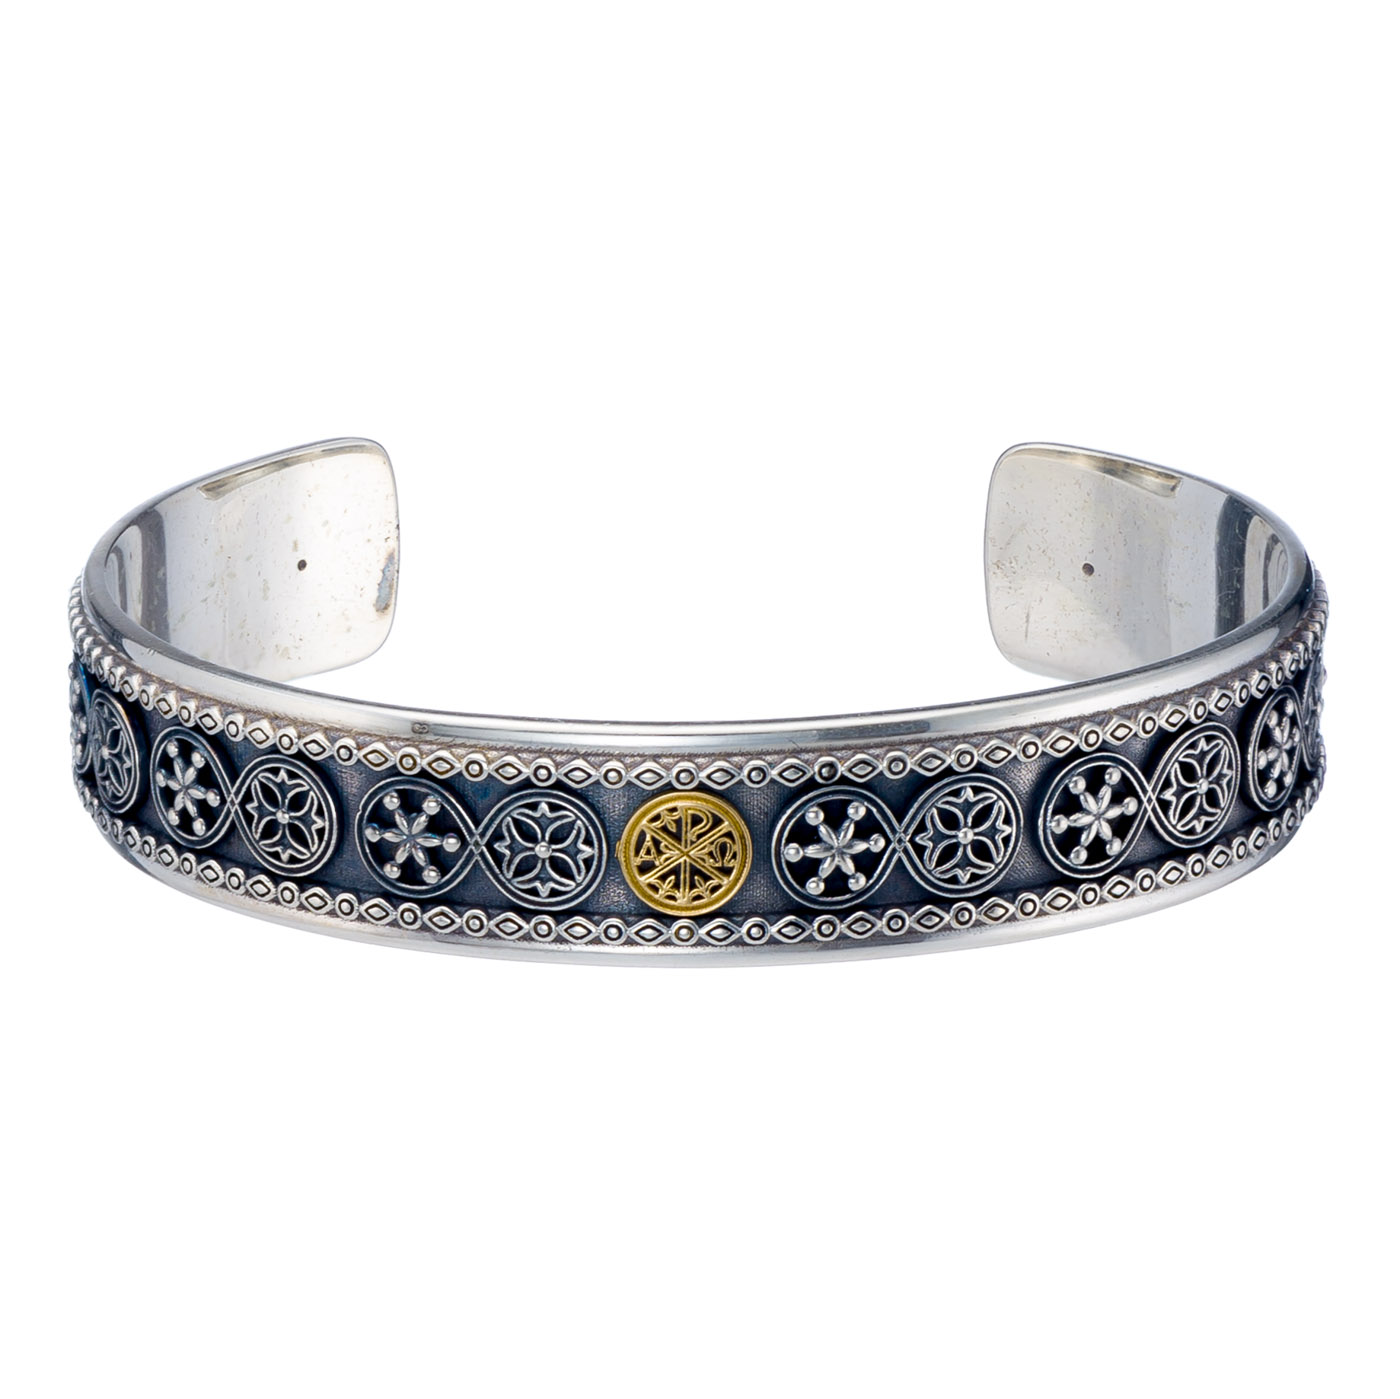 Byzantine symbol ΑΡΧΩ Bracelet in Sterling silver with 18K Gold details